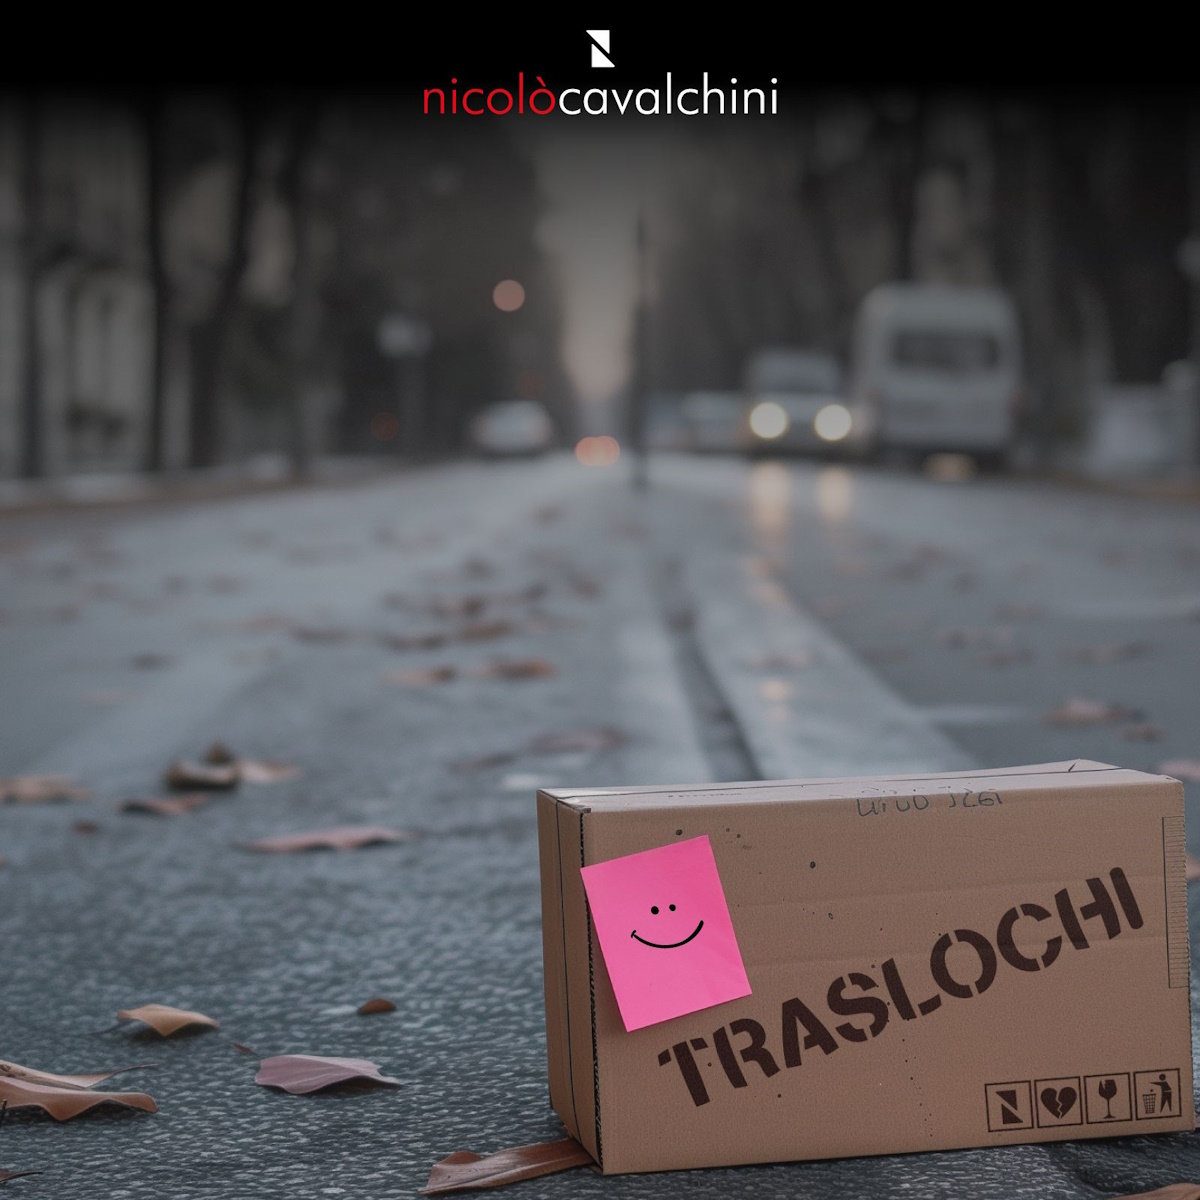 ‘Traslochi’, per il singolo di Nicolò Cavalchini un videoclip con l’Intelligenza Artificiale